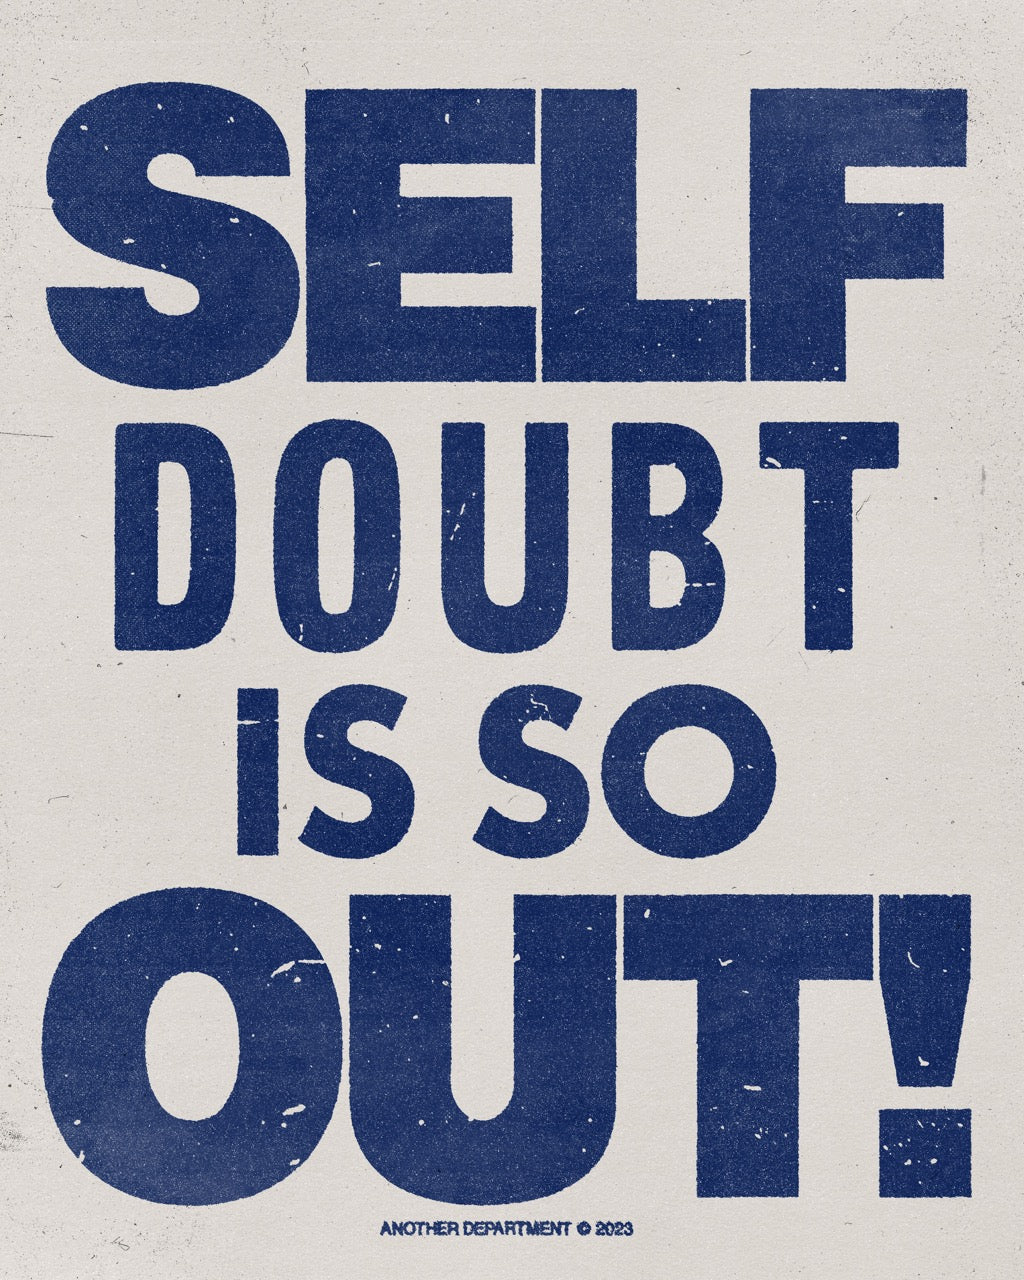 336 - Self Doubt